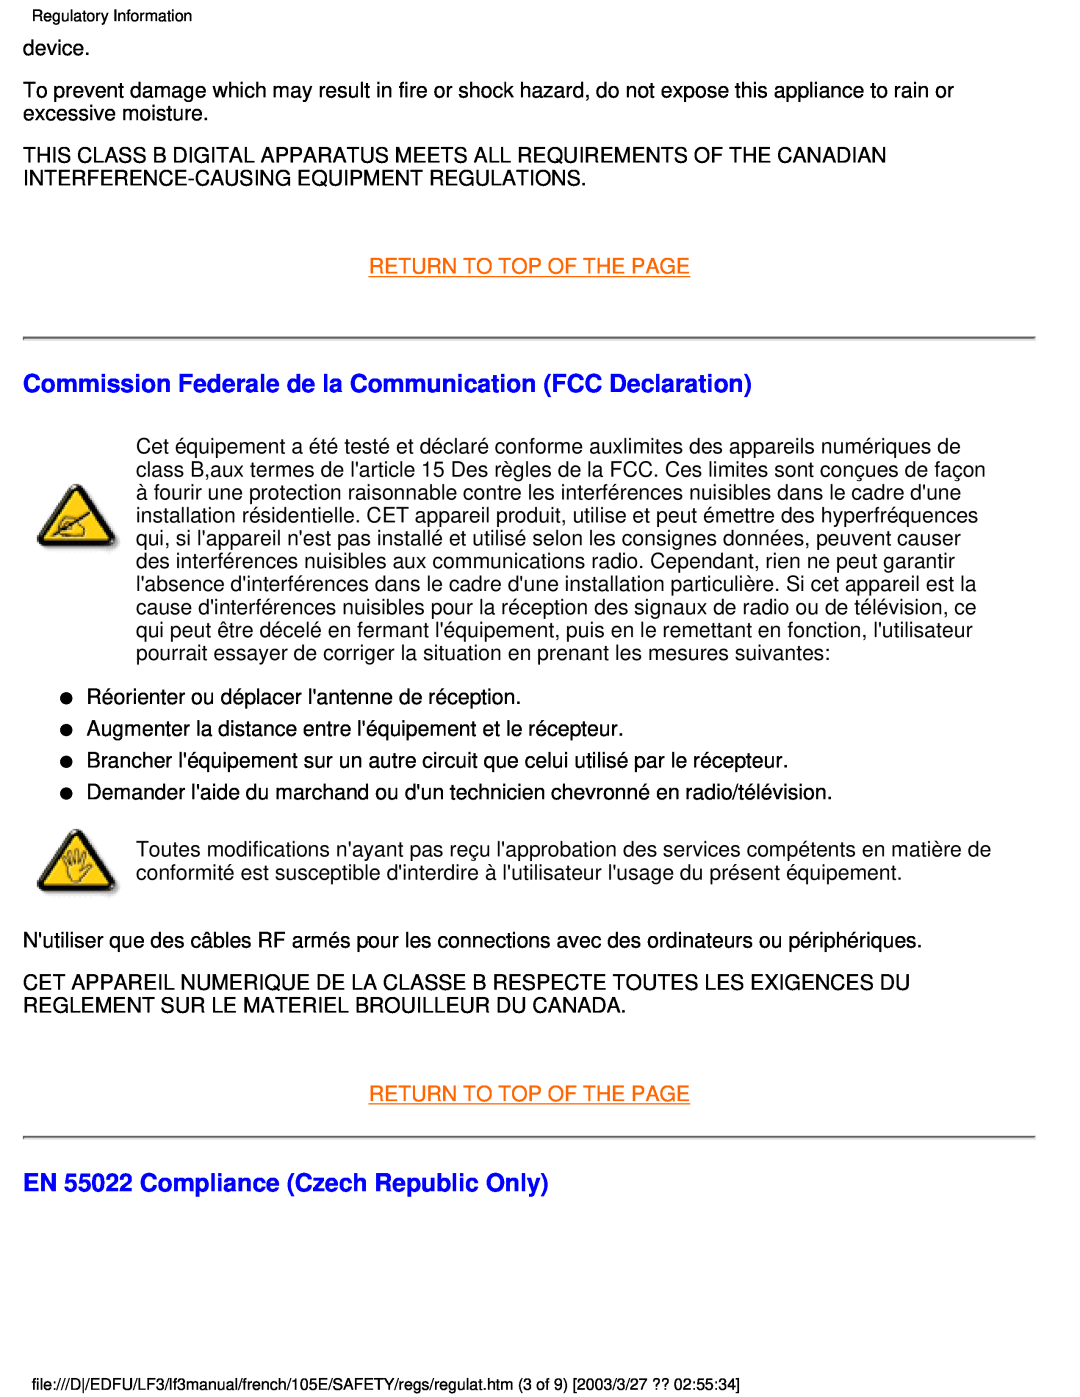 Philips 105E user manual Commission Federale de la Communication FCC Declaration, EN 55022 Compliance Czech Republic Only 